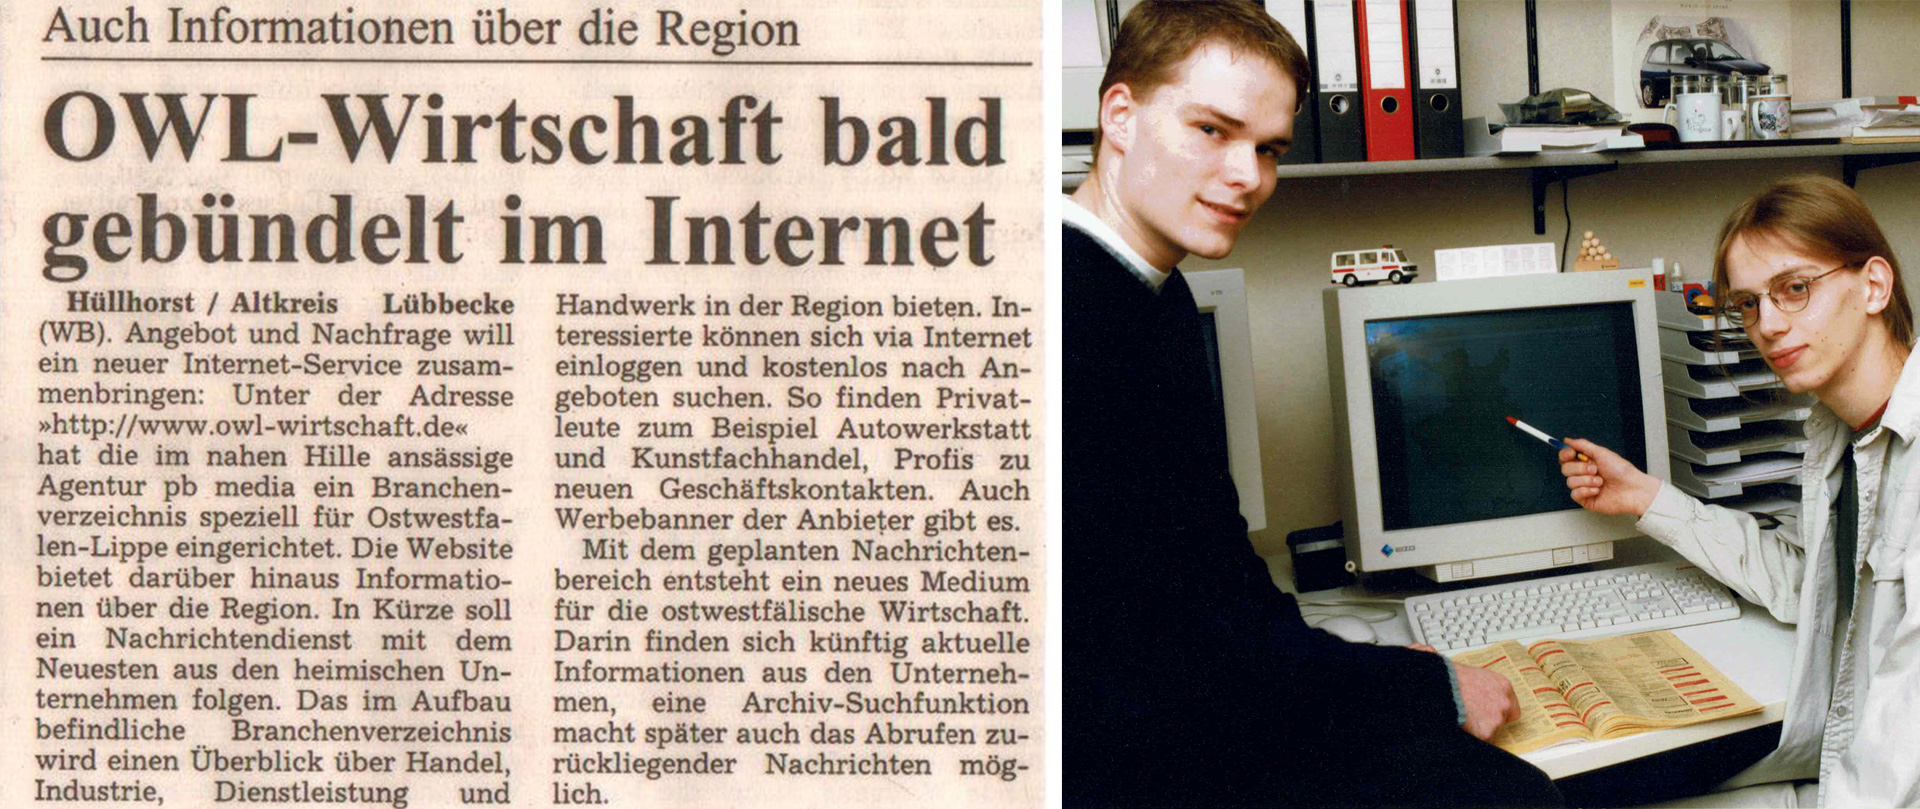 25 Jahre pb-media.de GmbH